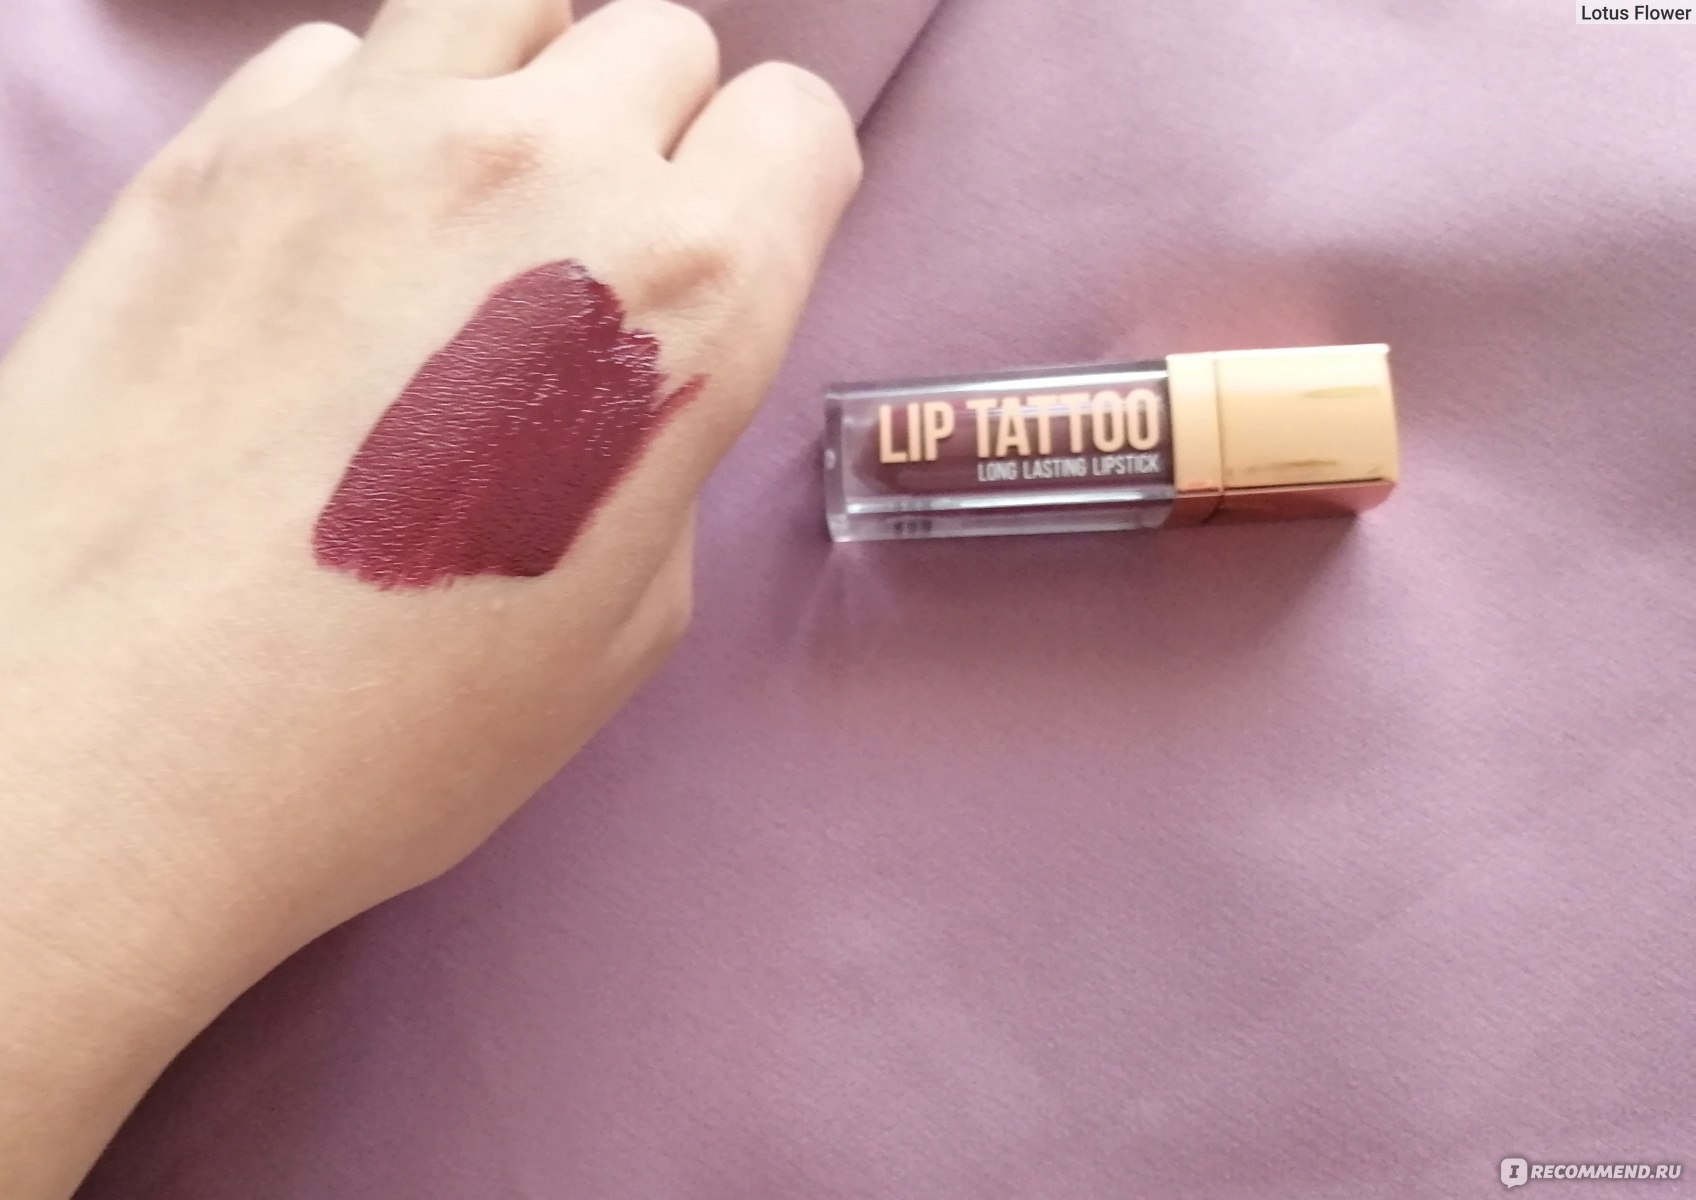 long lasting lipstick lip tattoo